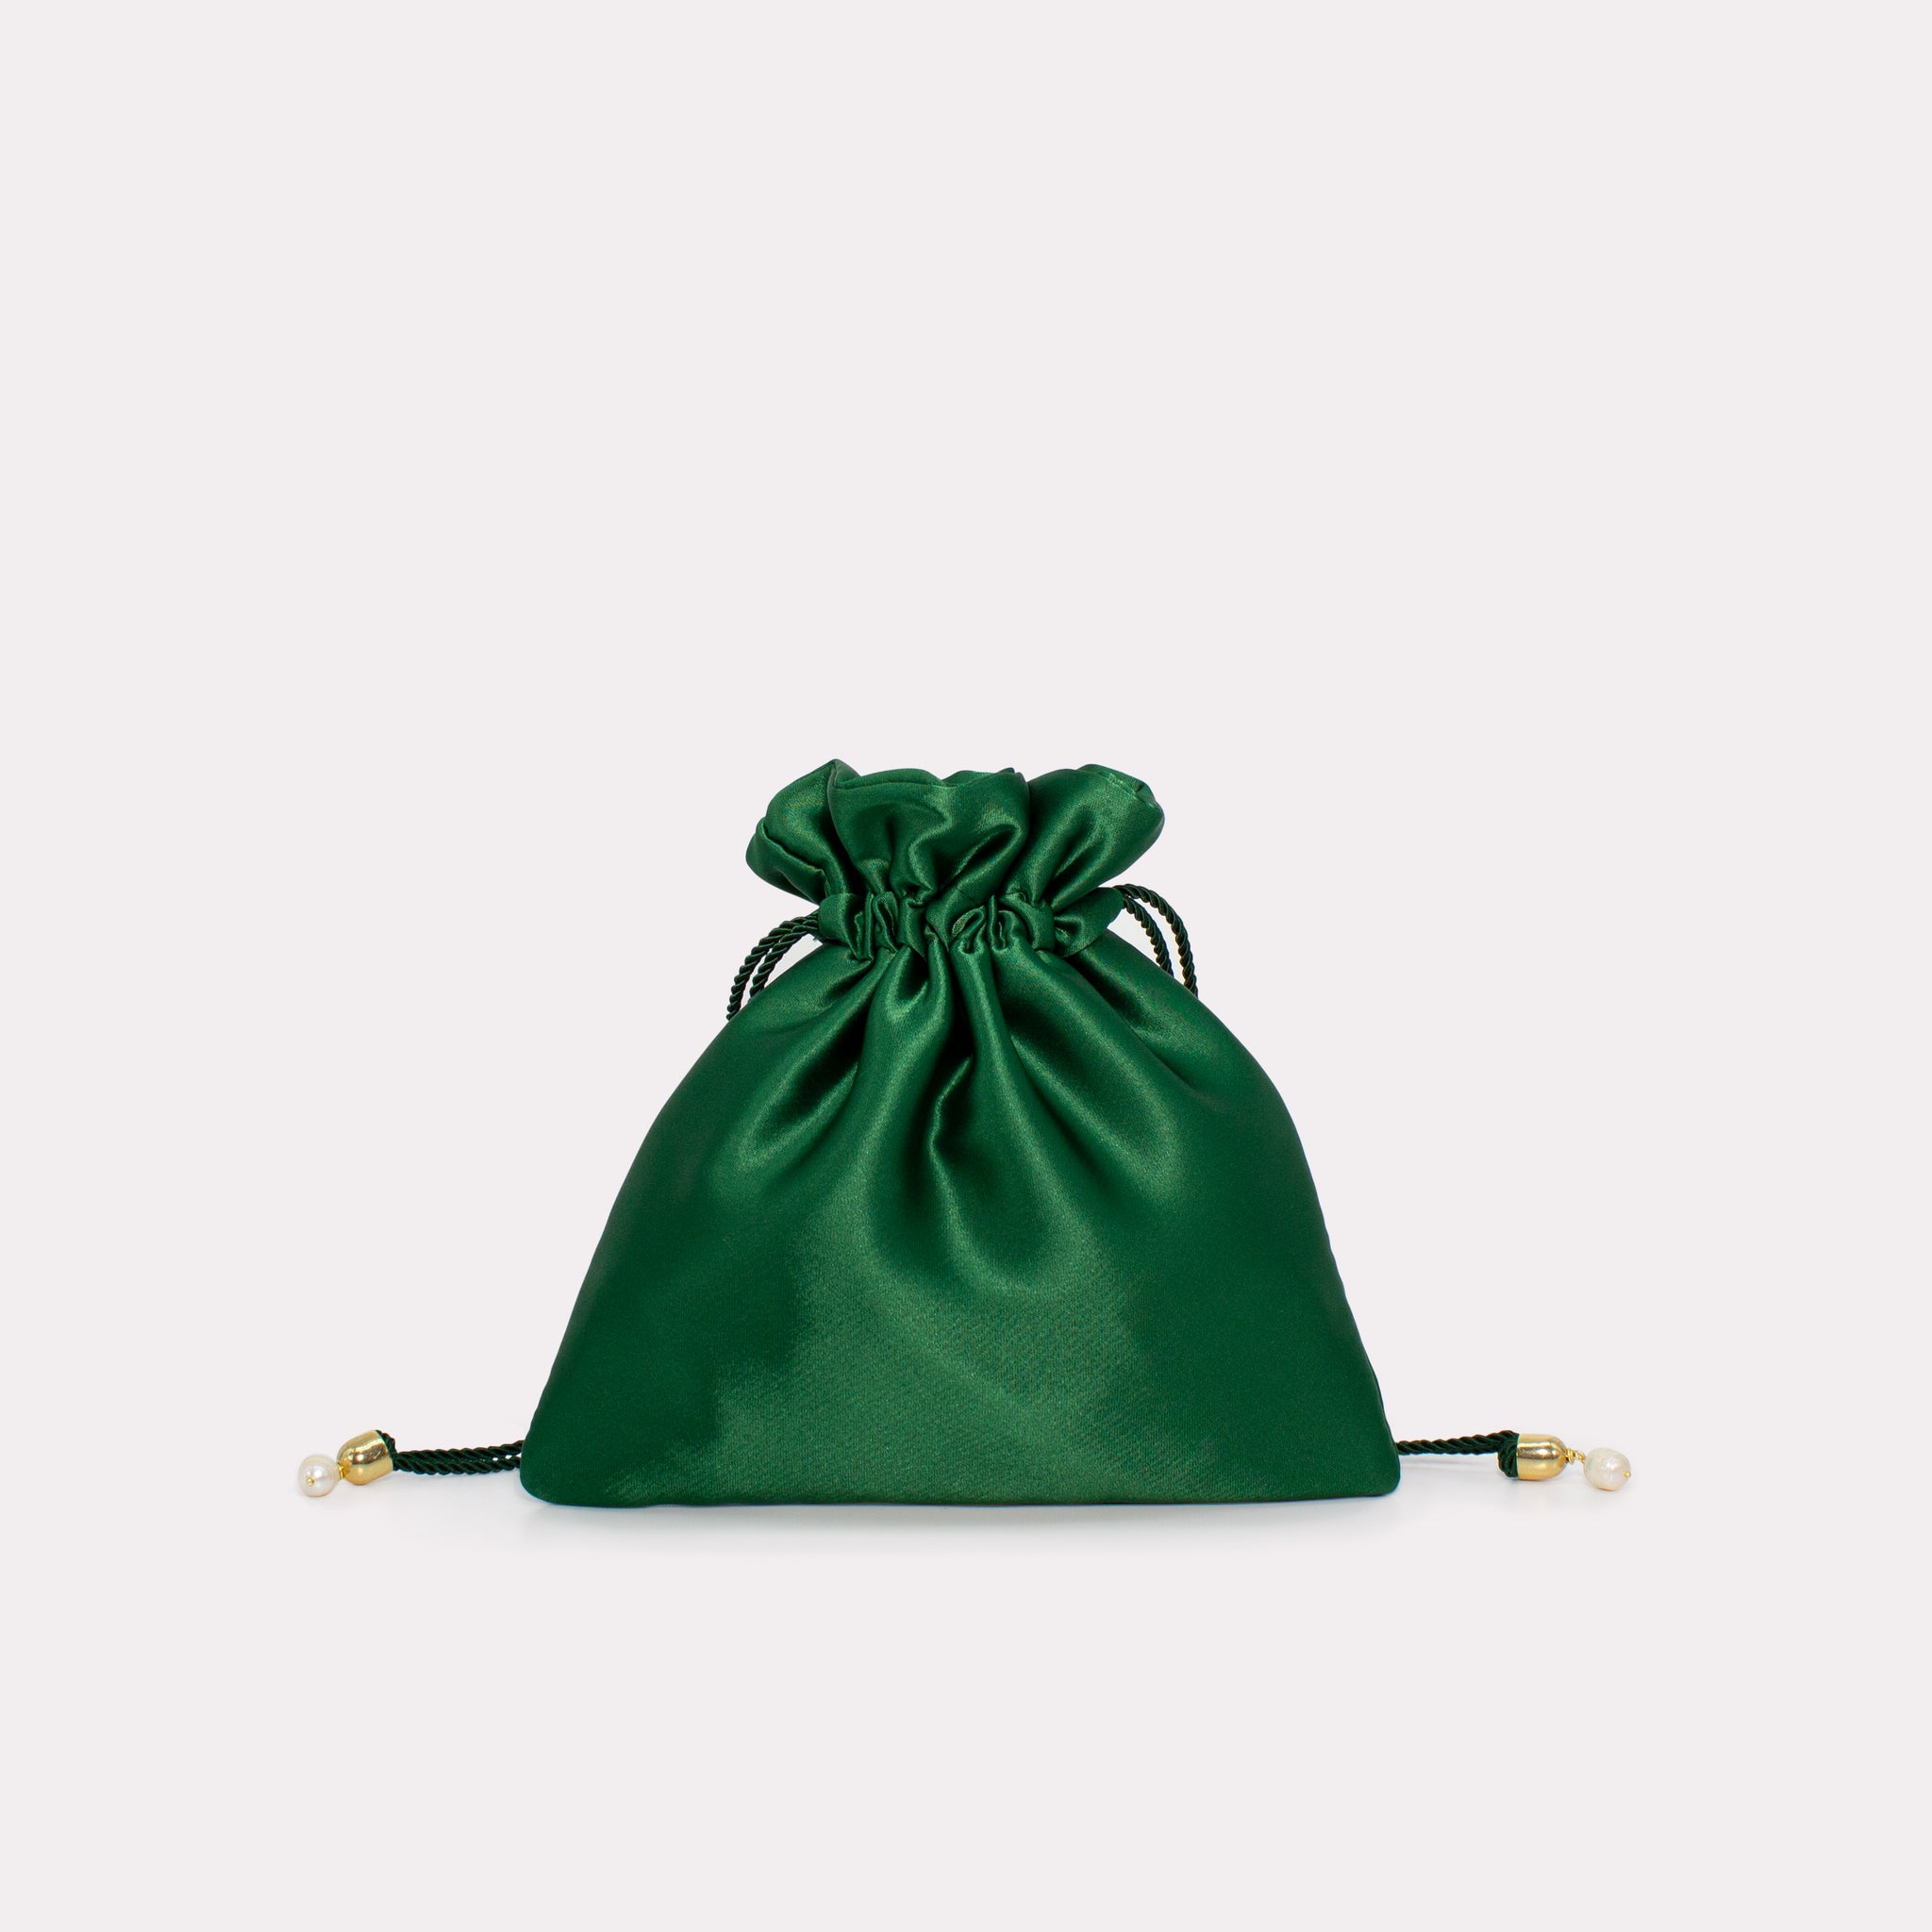 Mini Bag in colorazione verde giada